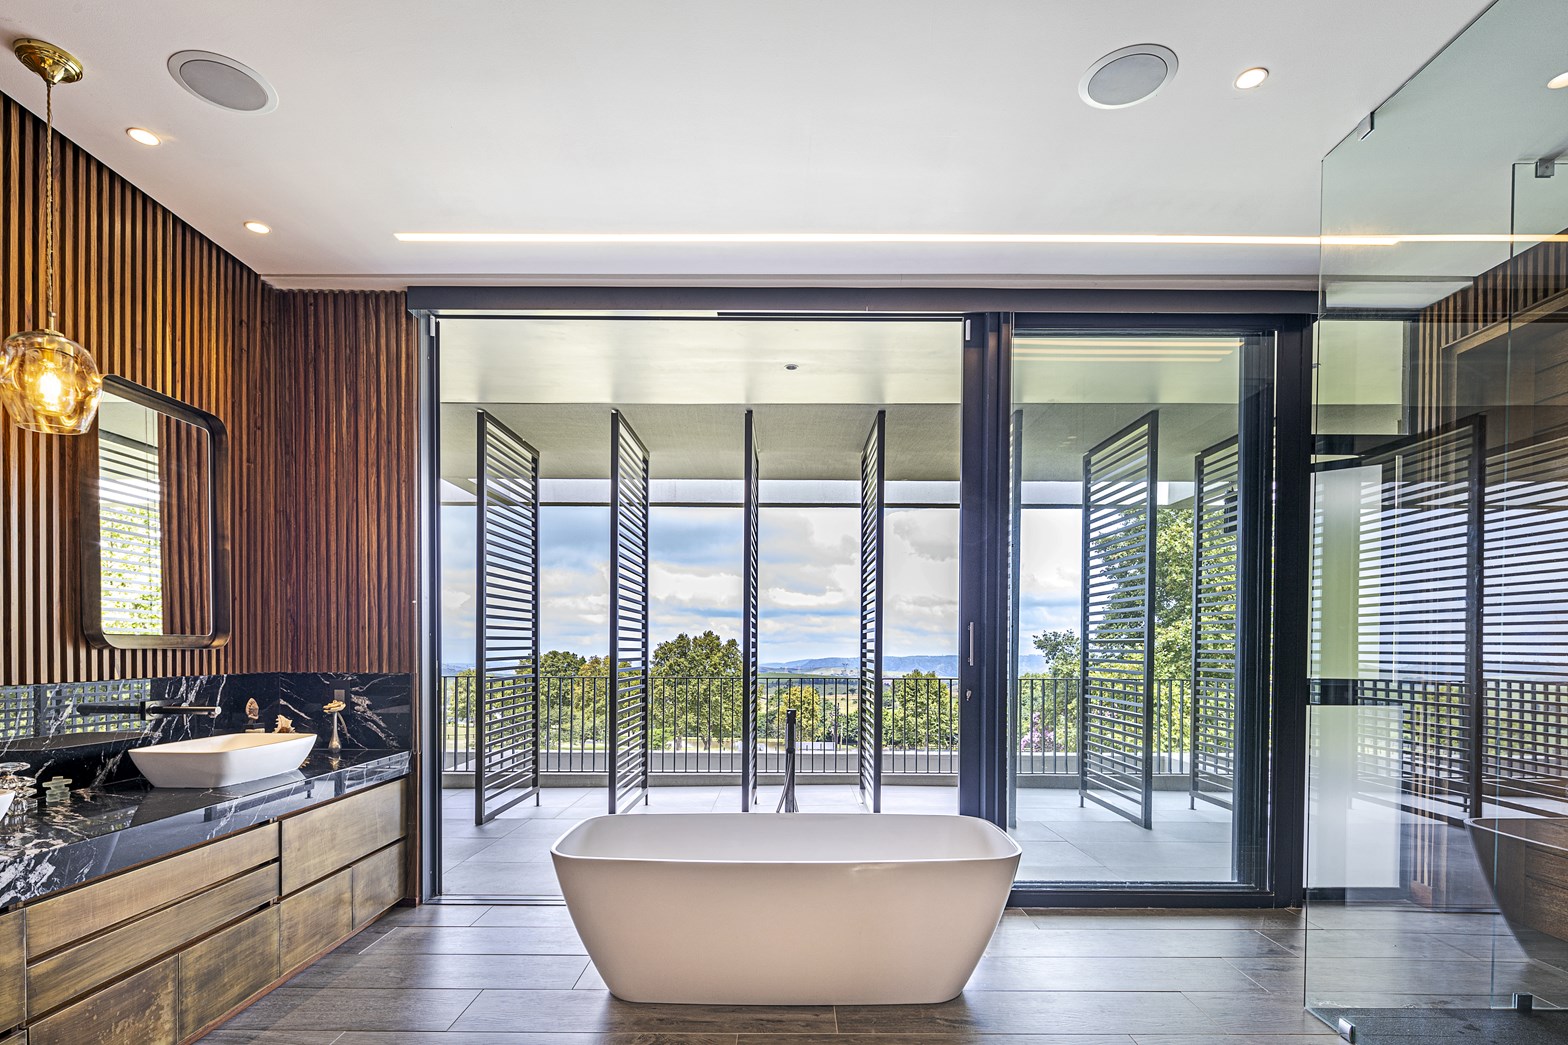 A modern bathroom showcasing wood slat walls, a glass enclosed shower, and a freestanding bathtub.